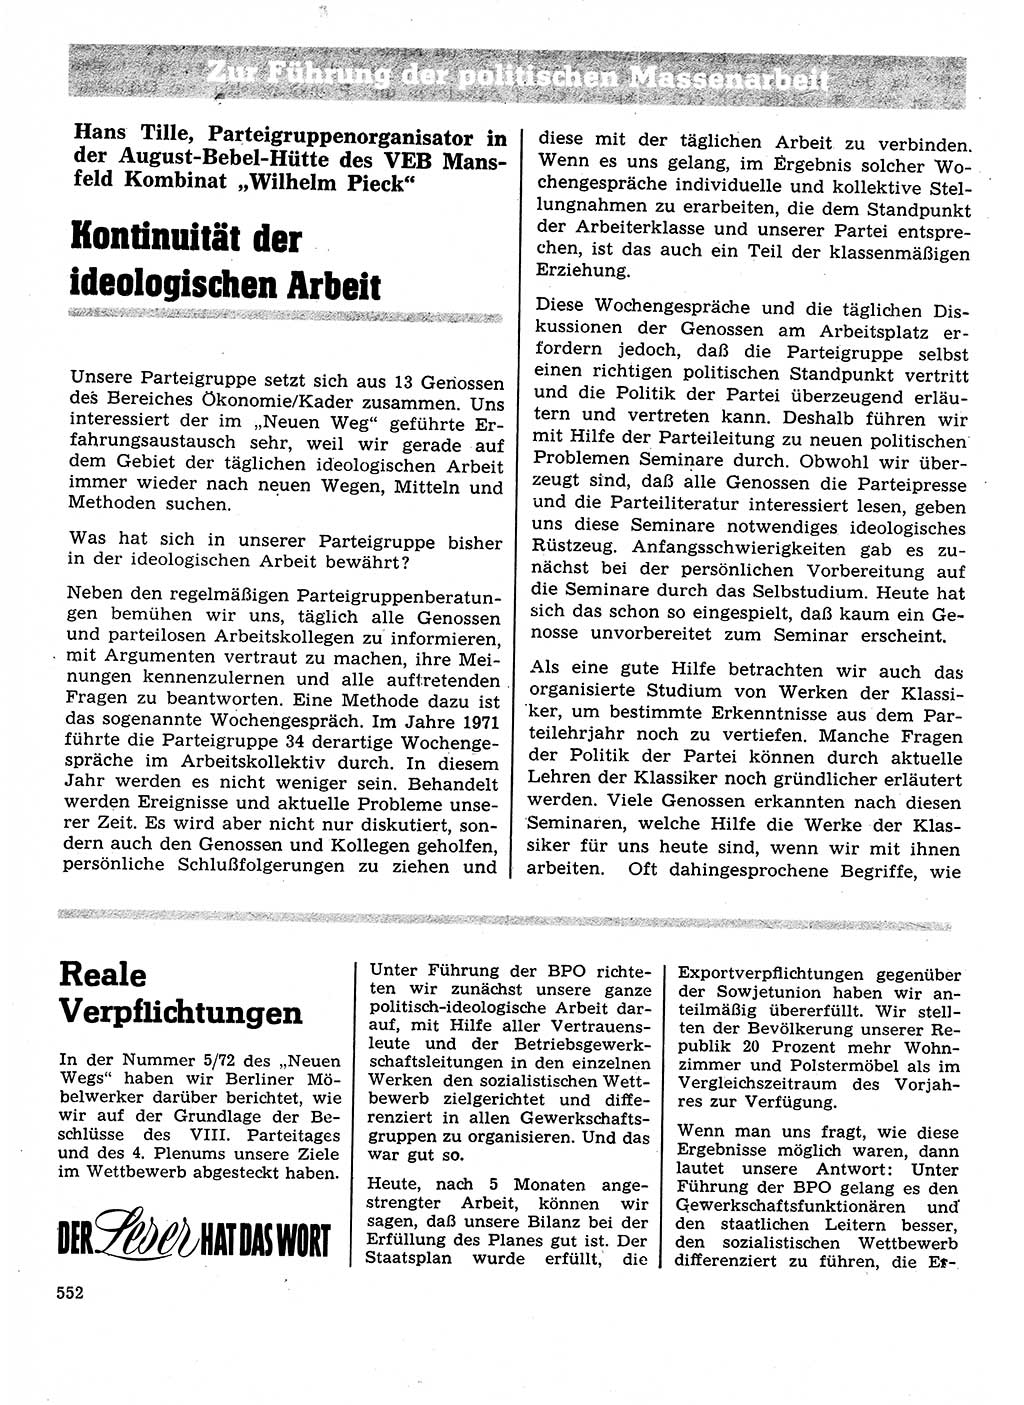 Neuer Weg (NW), Organ des Zentralkomitees (ZK) der SED (Sozialistische Einheitspartei Deutschlands) für Fragen des Parteilebens, 27. Jahrgang [Deutsche Demokratische Republik (DDR)] 1972, Seite 552 (NW ZK SED DDR 1972, S. 552)